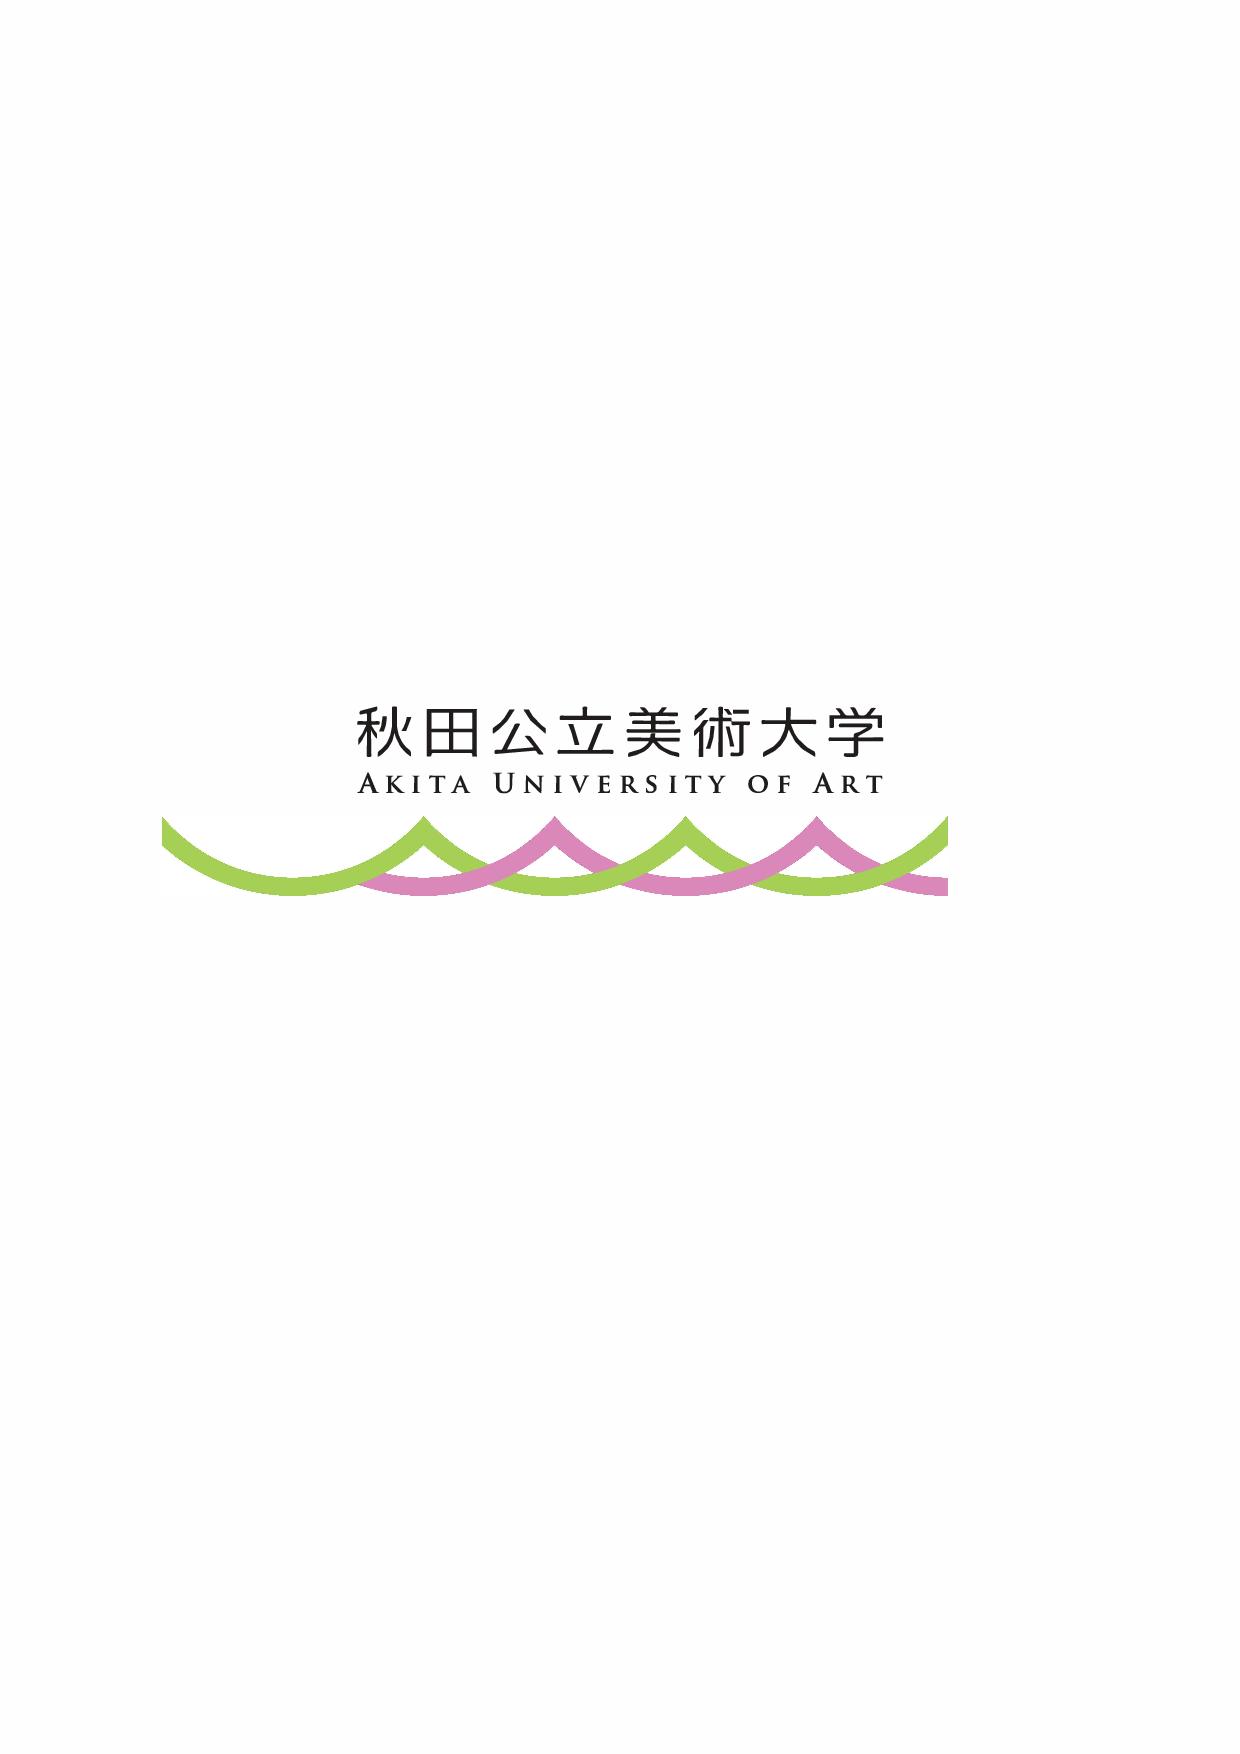 秋田バリアフリーネットワーク25周年記念事業 オンライン講演会